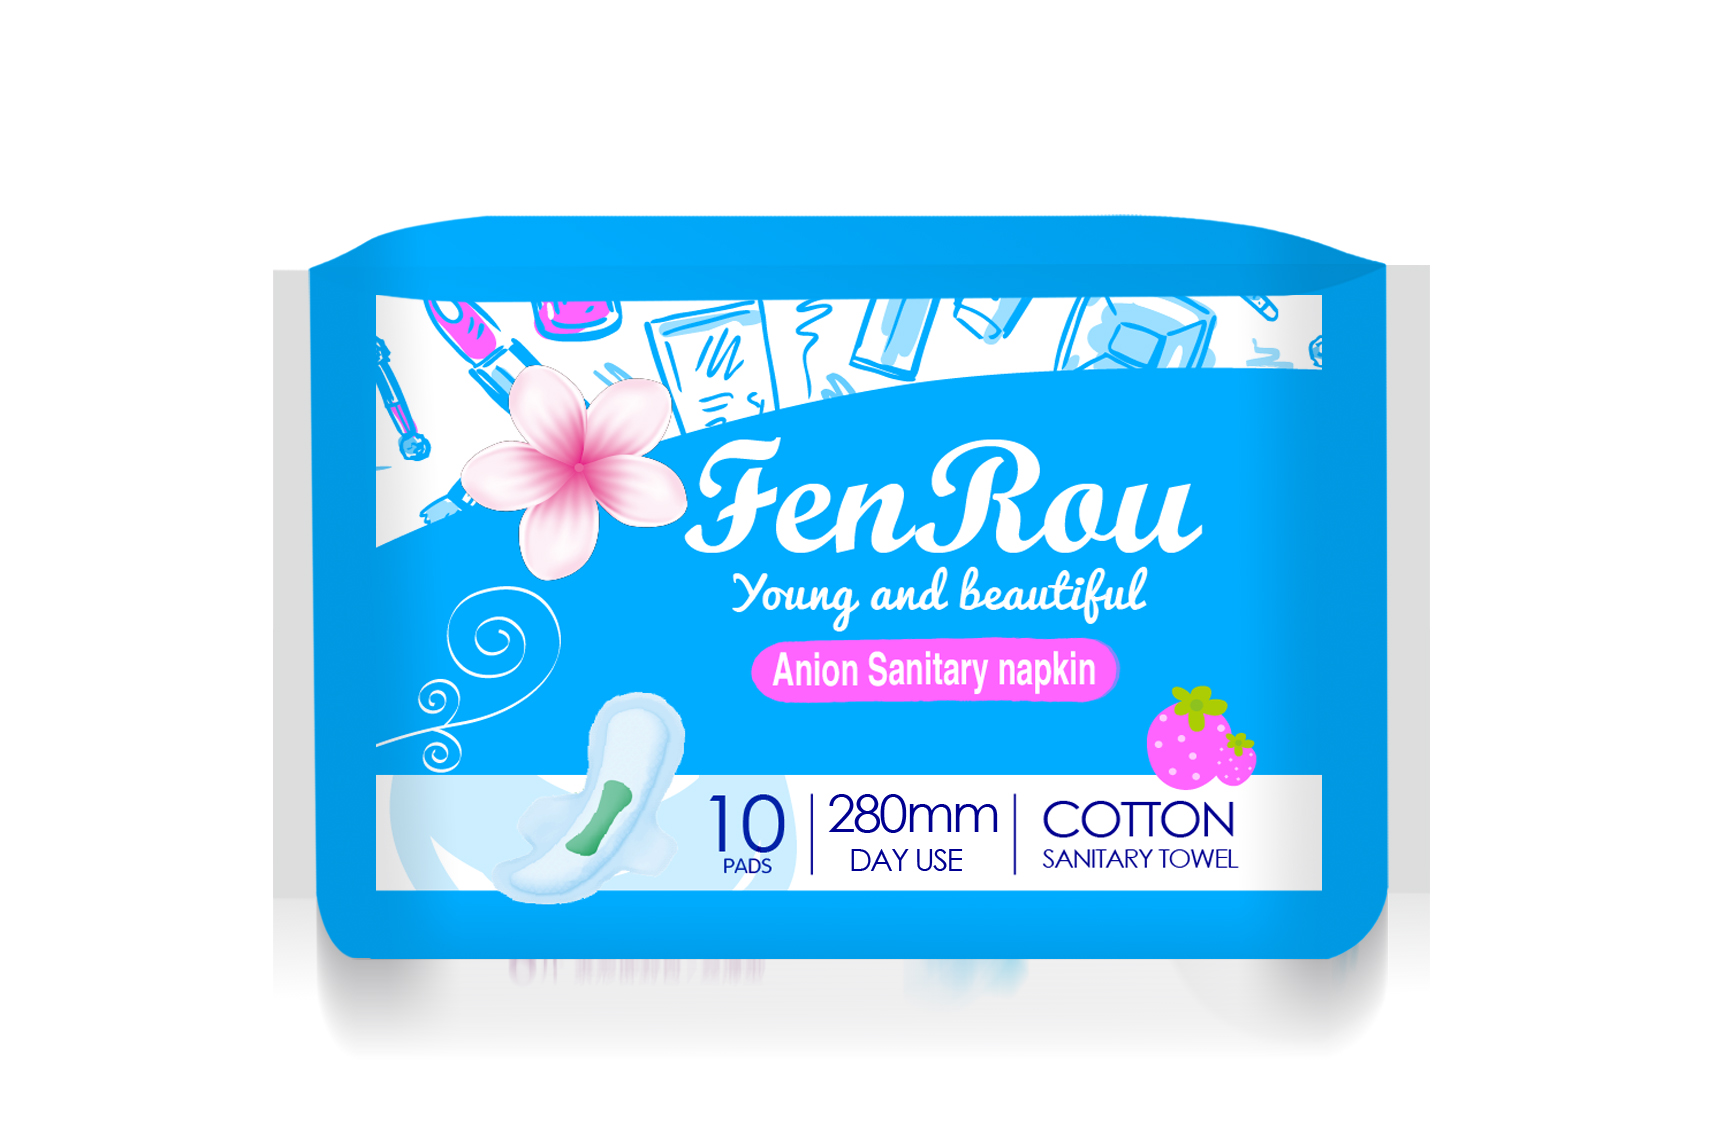 Atacado personalizado para uso diário 280 mm absorventes higiênicos femininos FenRou